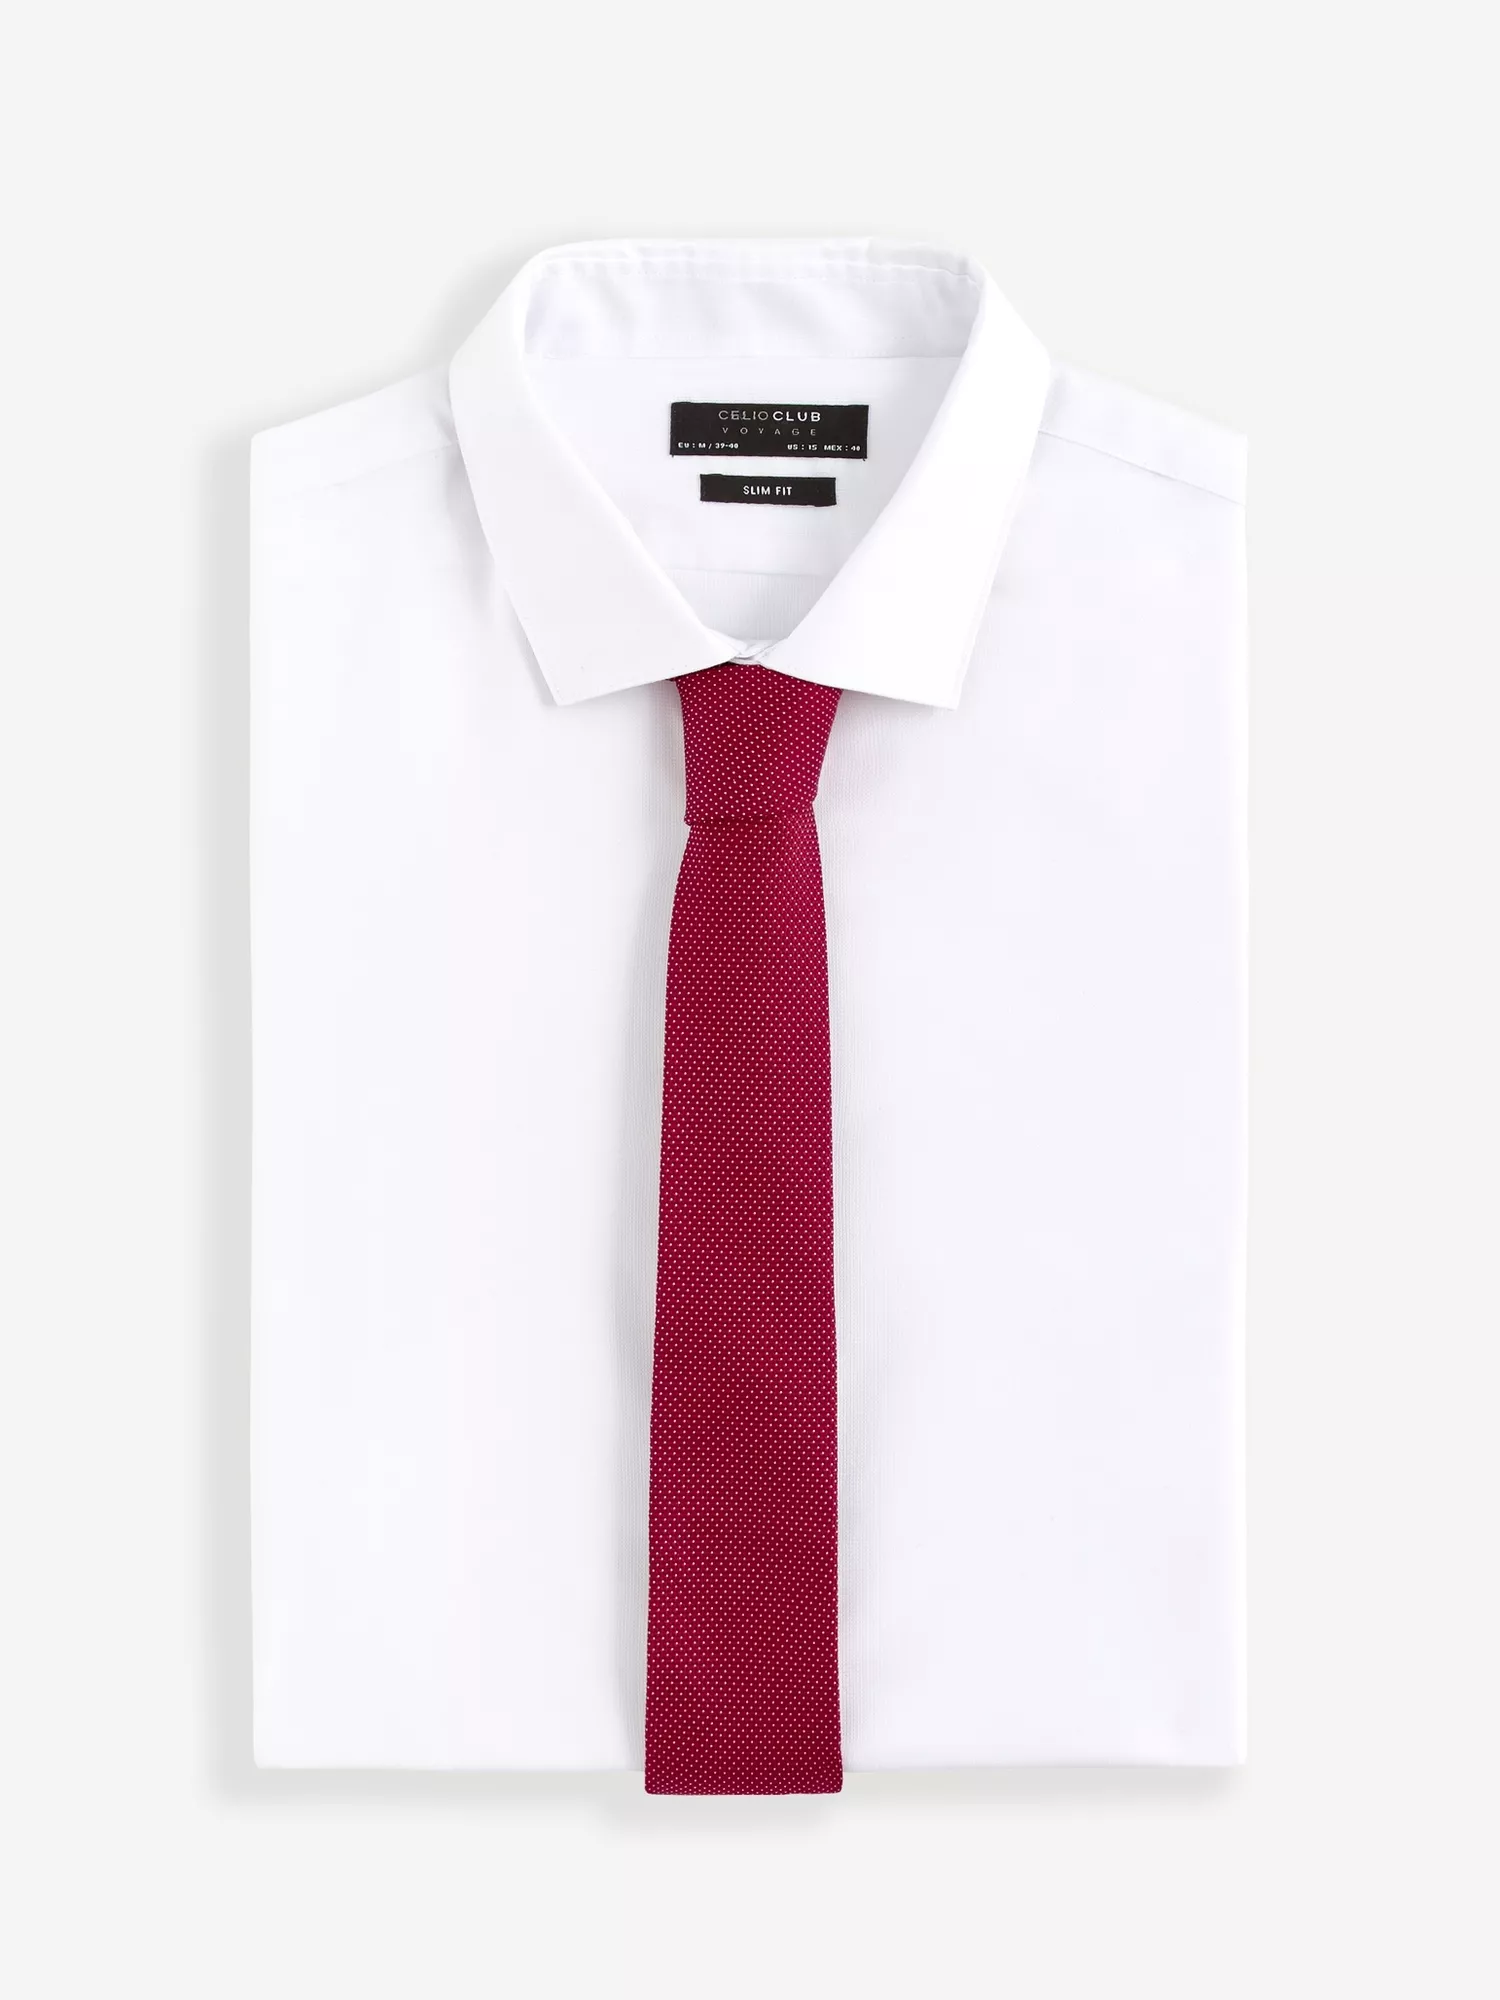 Hedvábná kravata Ristretto s puntíkem (2)